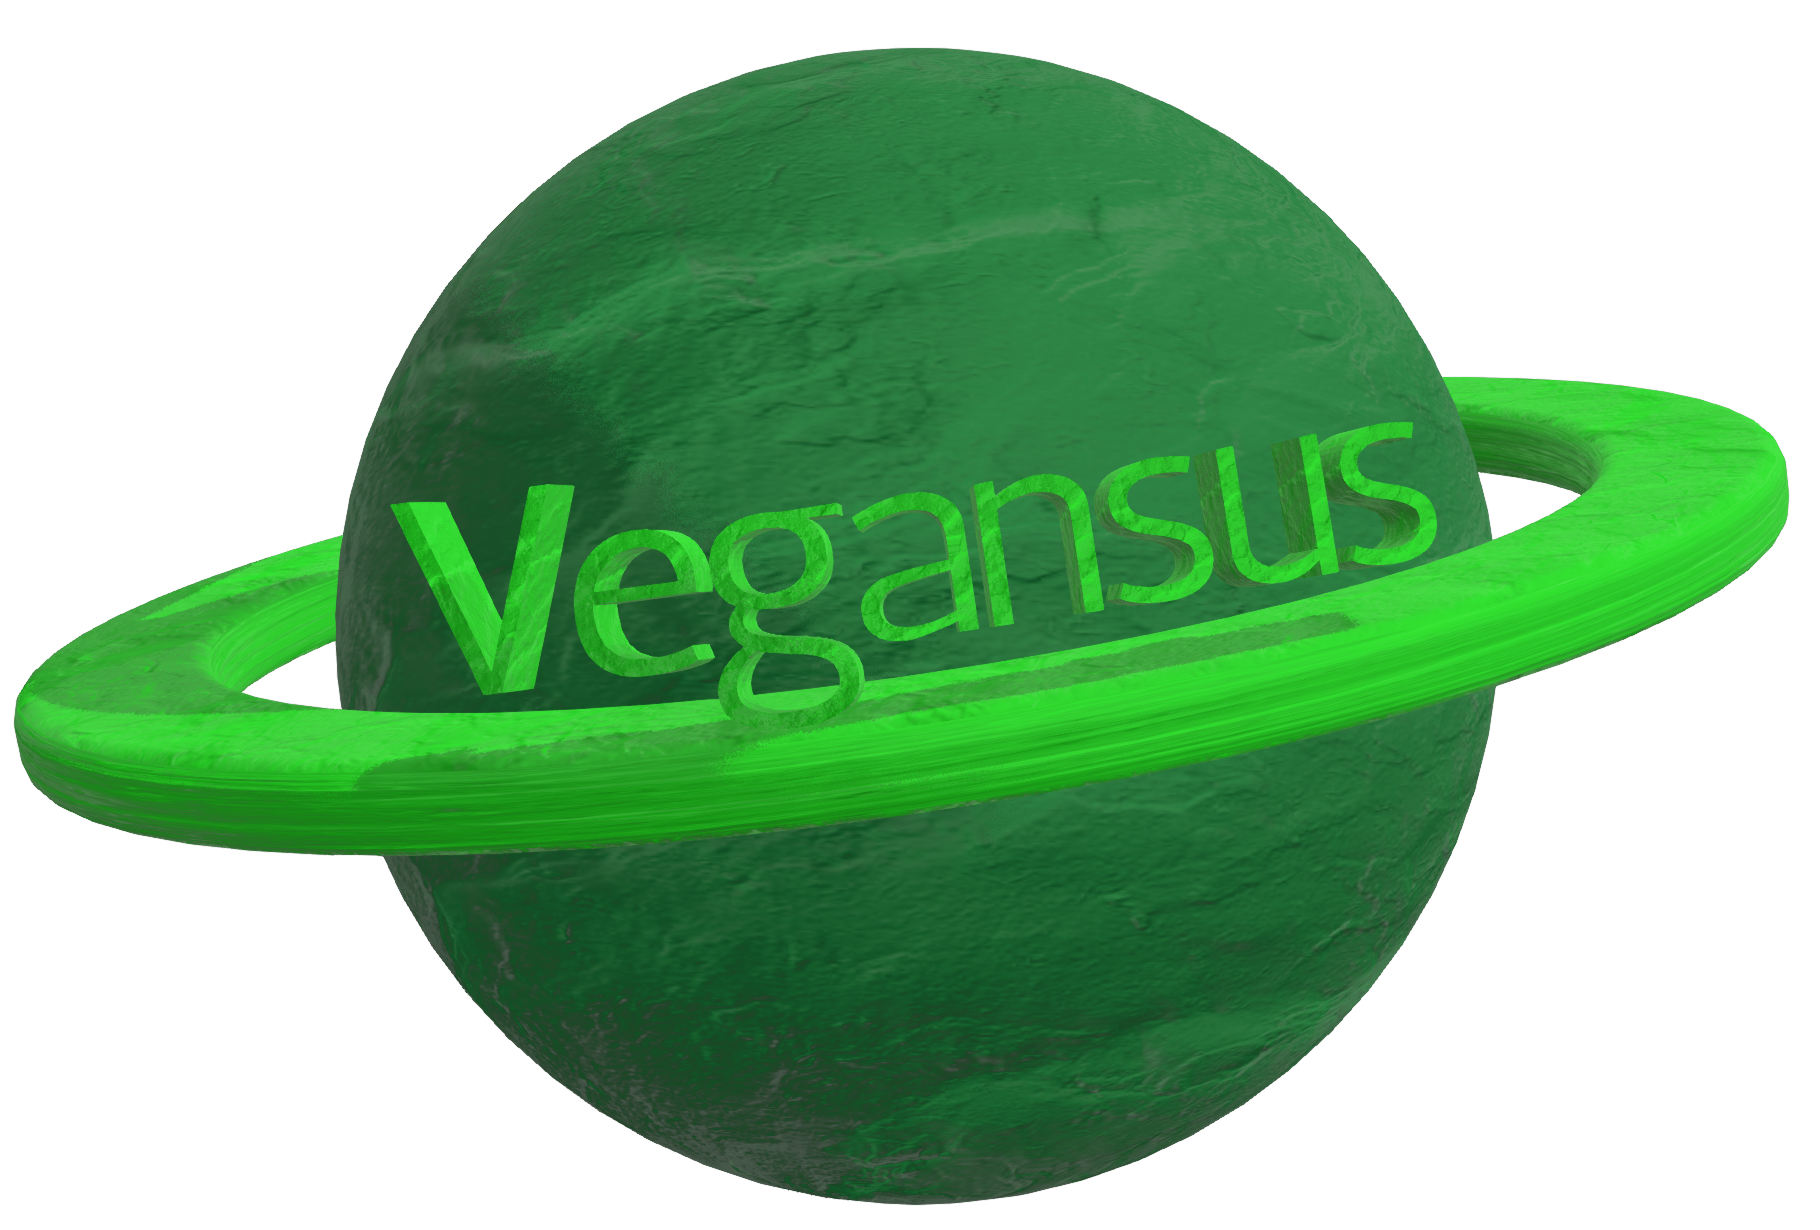 www.vegansus.com